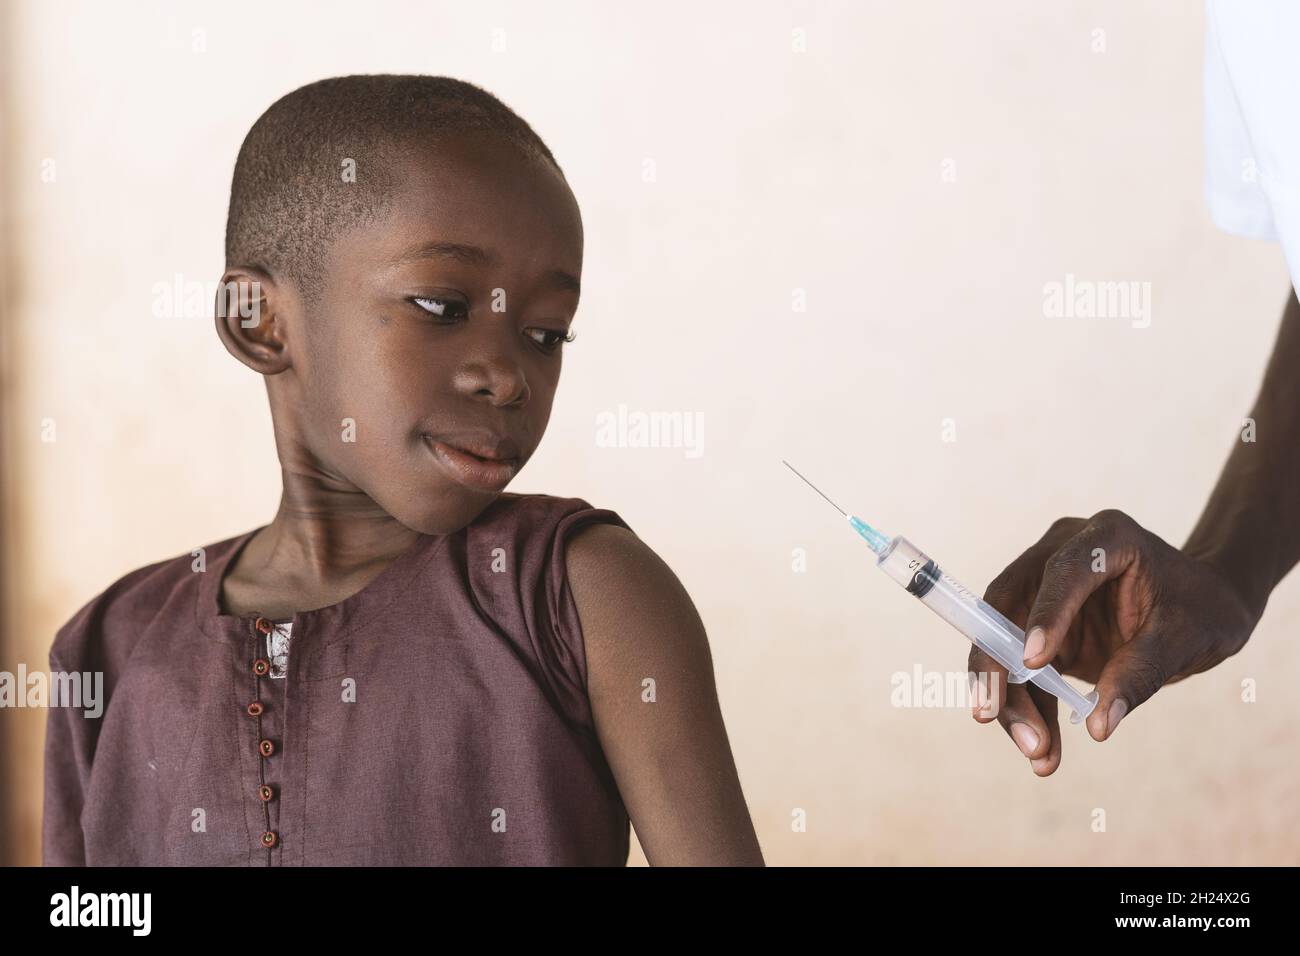 Professionnel de santé tenant une seringue avec un vaccin antipaludique à injecter à un petit garçon africain noir dans le cadre d'un programme de lutte contre le paludisme - Banque D'Images